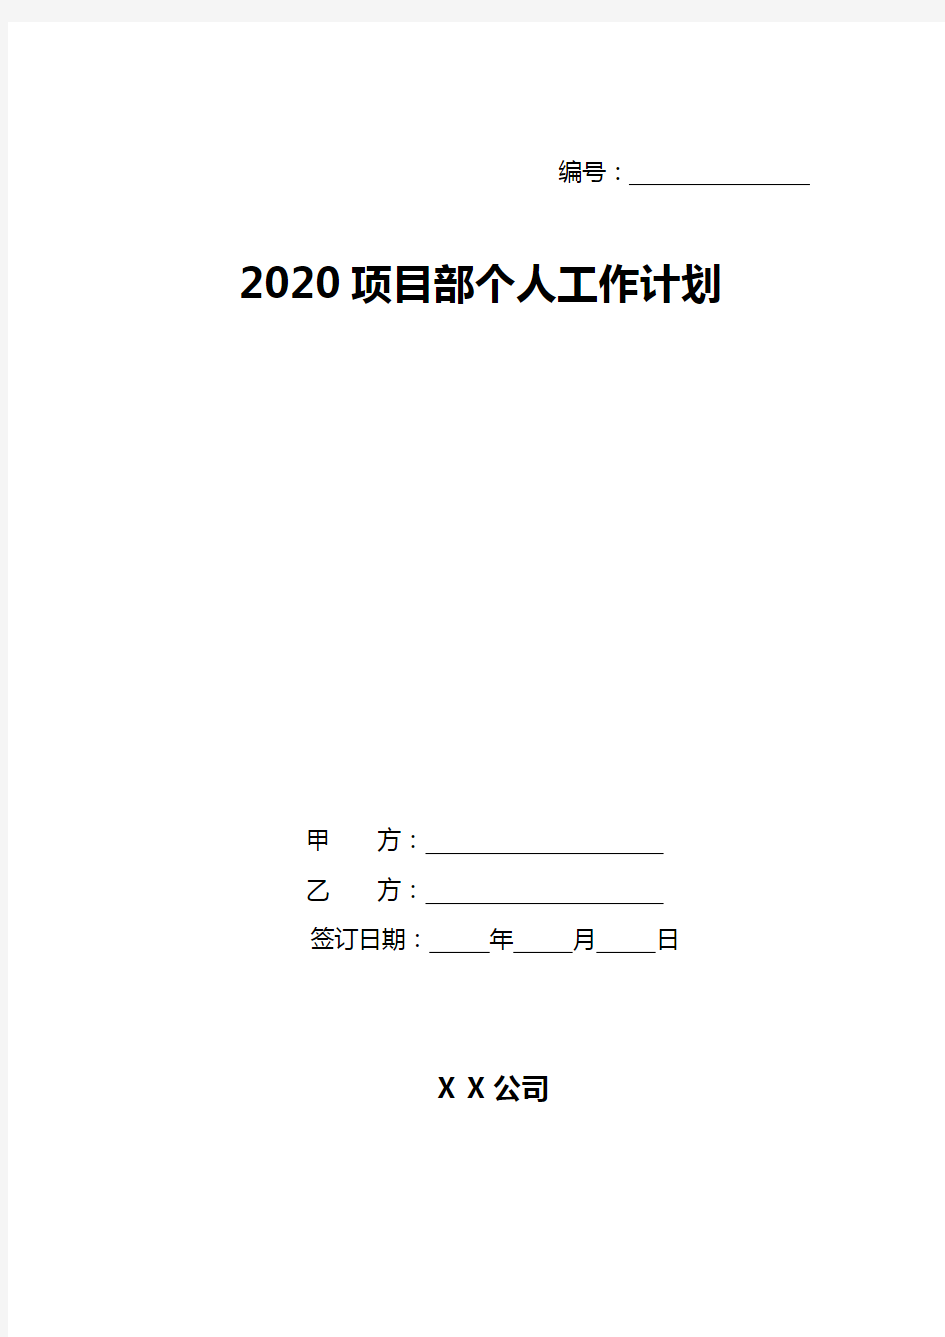 2020项目部个人工作计划